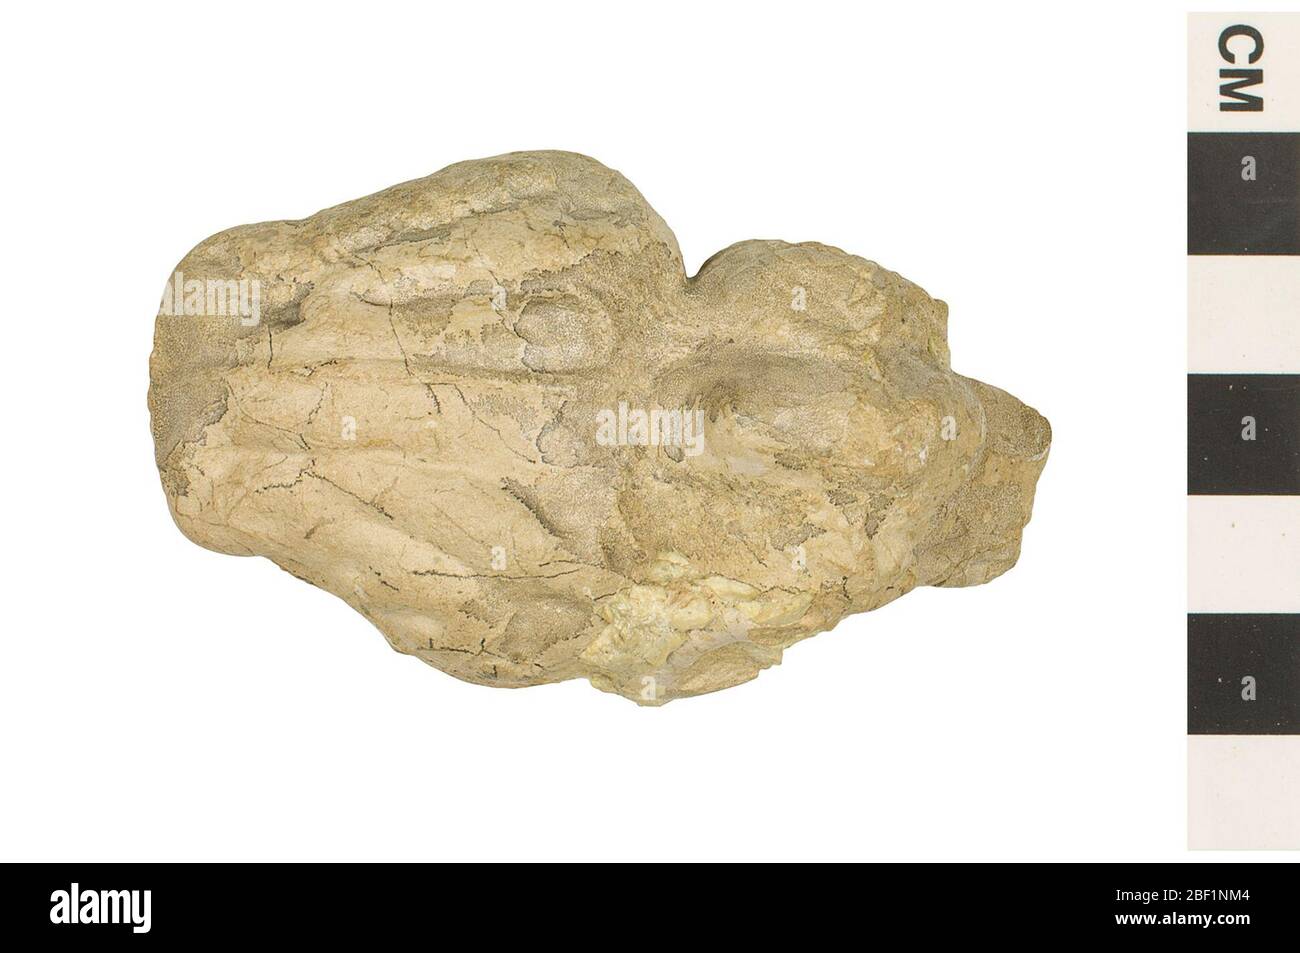 Oreodont. Dieses Objekt ist Teil der Sammlung Bildung und Öffentlichkeitsarbeit, von denen einige im Q?rius Science Education Center sind und zu sehen.Cenozoikum - Paläogen - OligozeneDieses Endocast oder innere Schädelabguss, stammt von einem Oreodont, das ein pflanzenfressendes Schwein-ähnliches Säugetier war Stockfoto